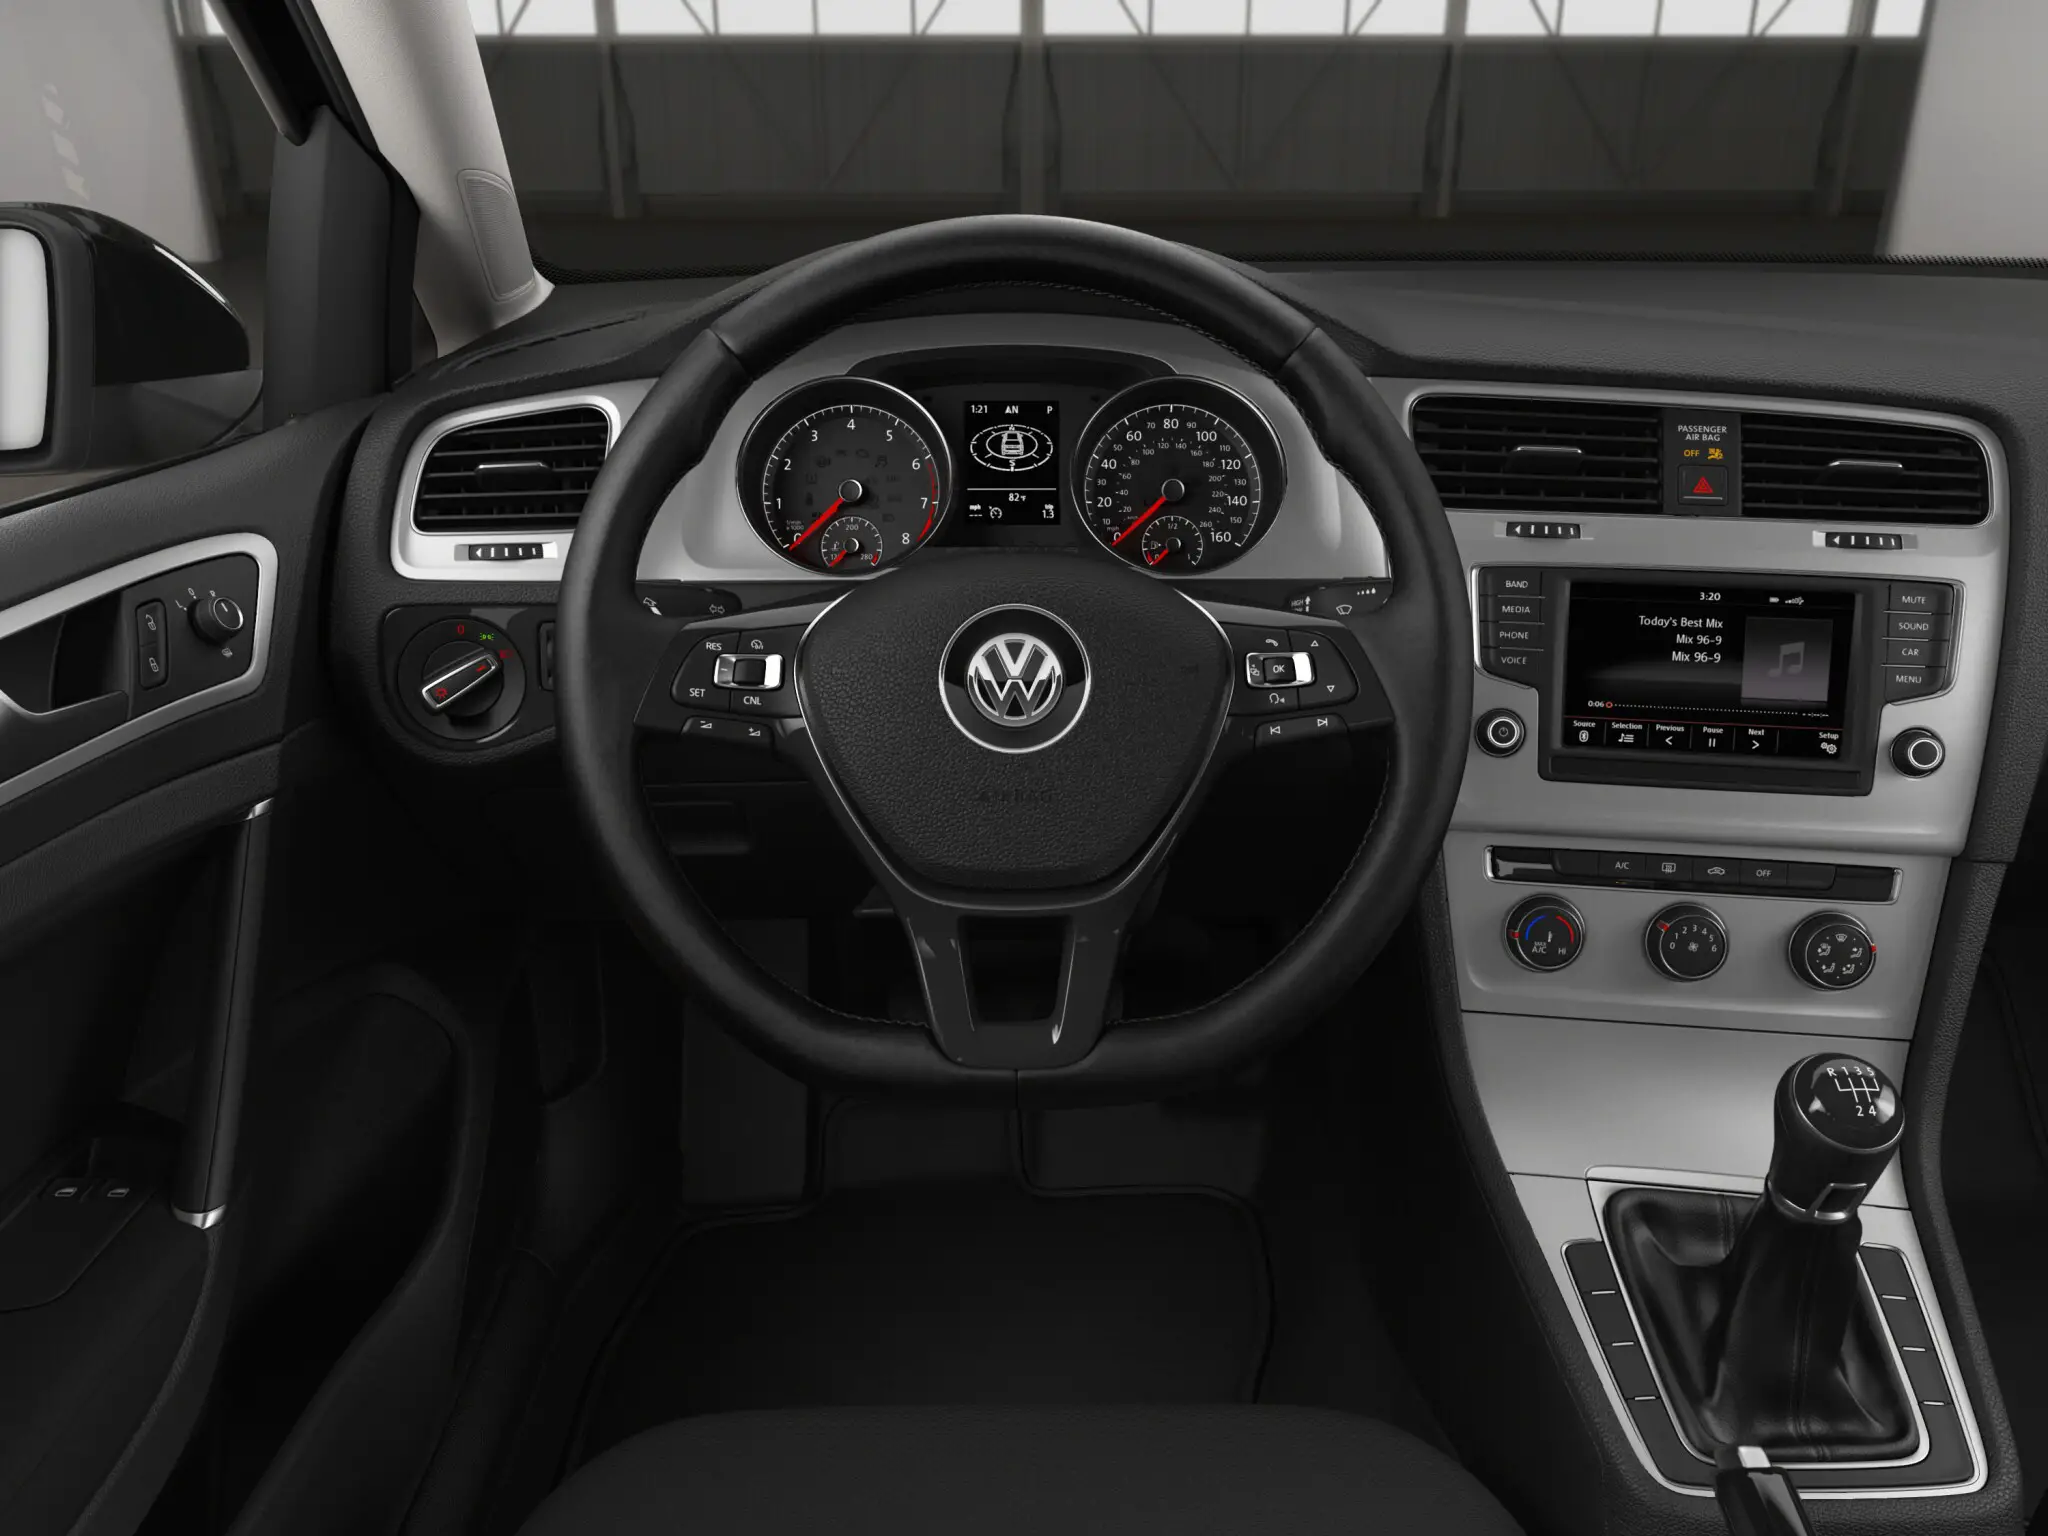 Volkswagen Golf TSI 2 Door interior front cross view